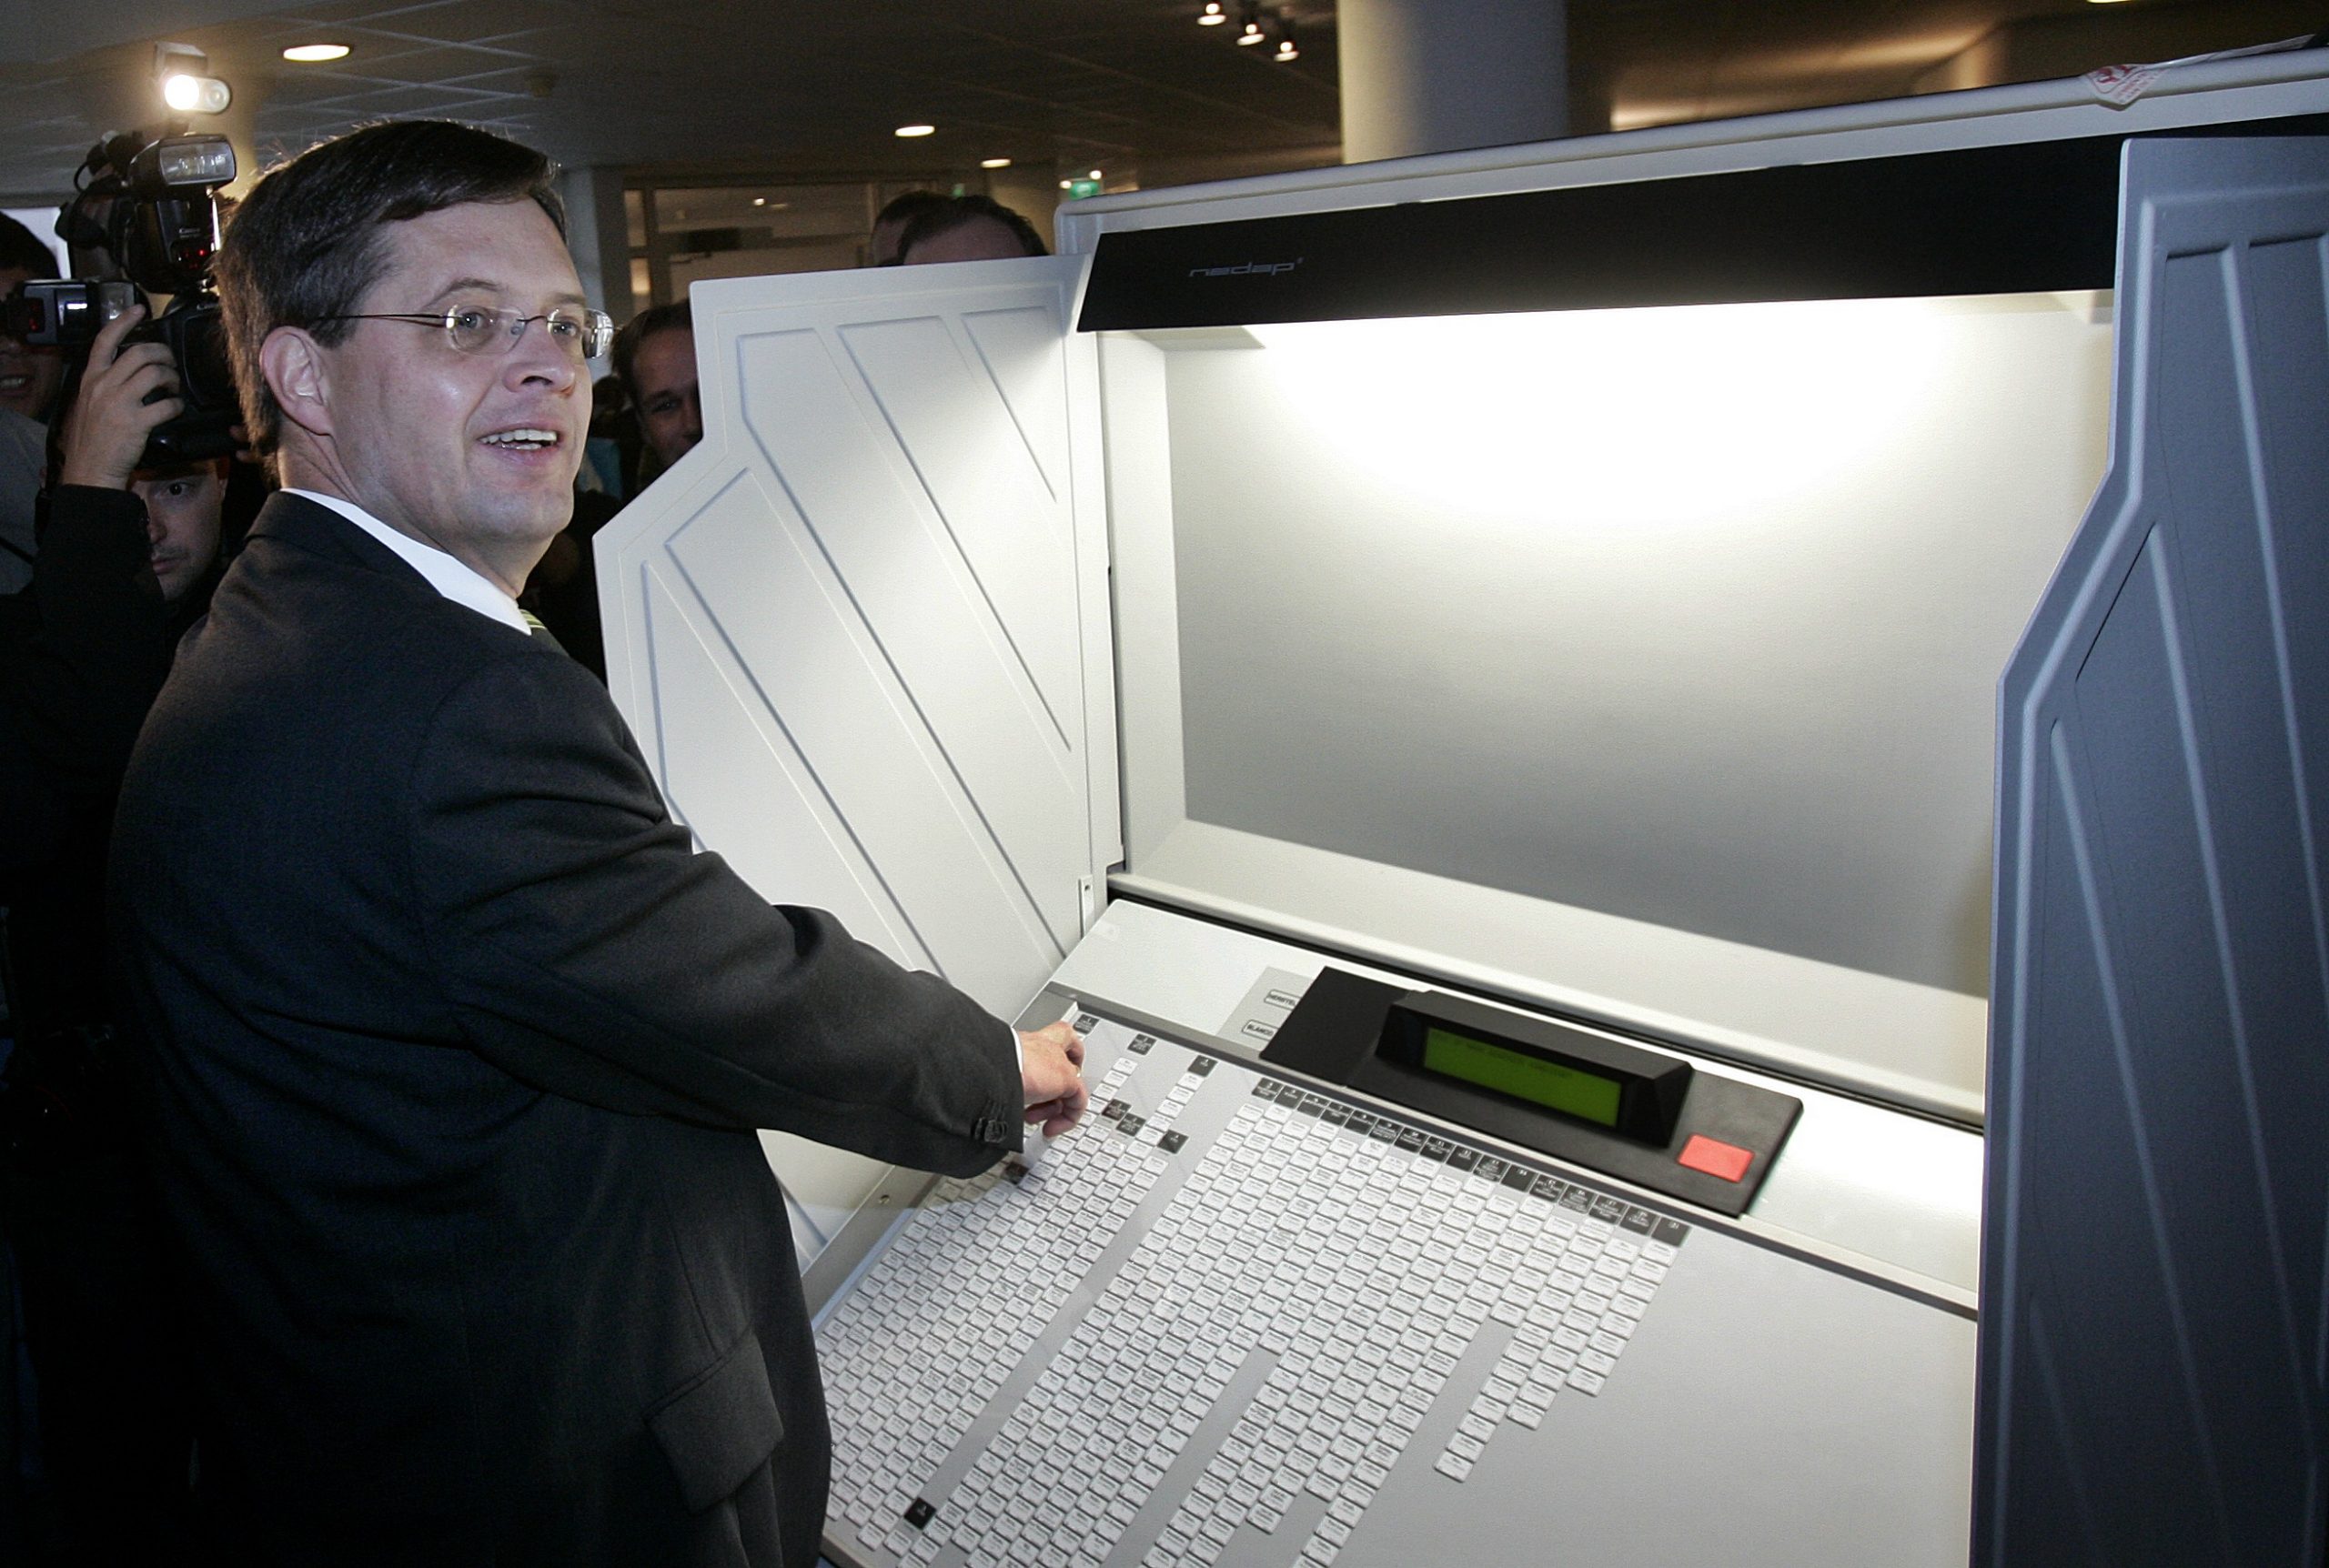 In 2006 werden nog stemcomputers gebruikt bij de verkiezingen. Zoals hier door toenmalig premier Jan Peter Balkenende. Foto: ANP/Robert Vos